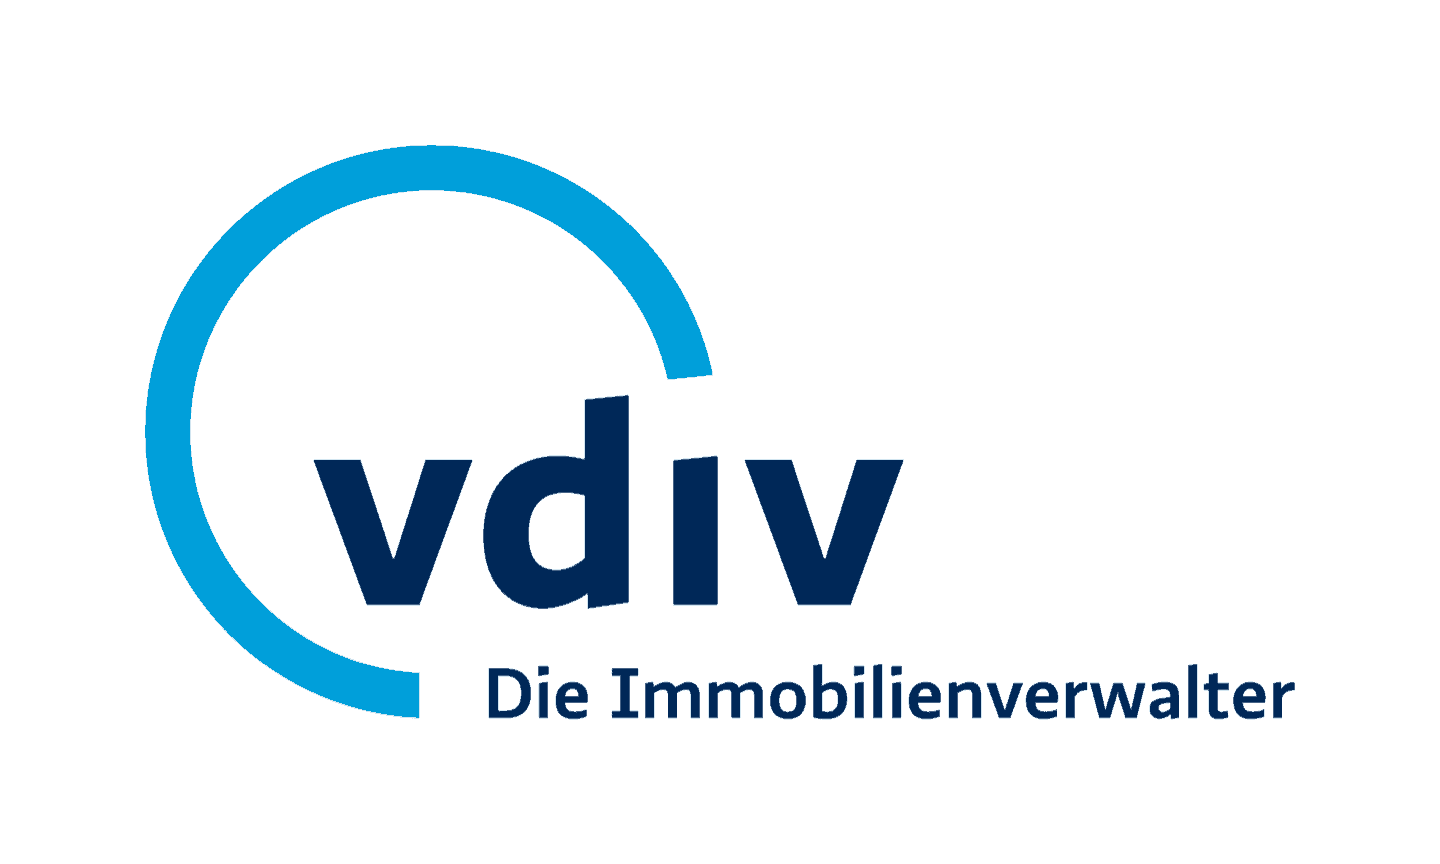 VDIV Management GmbH